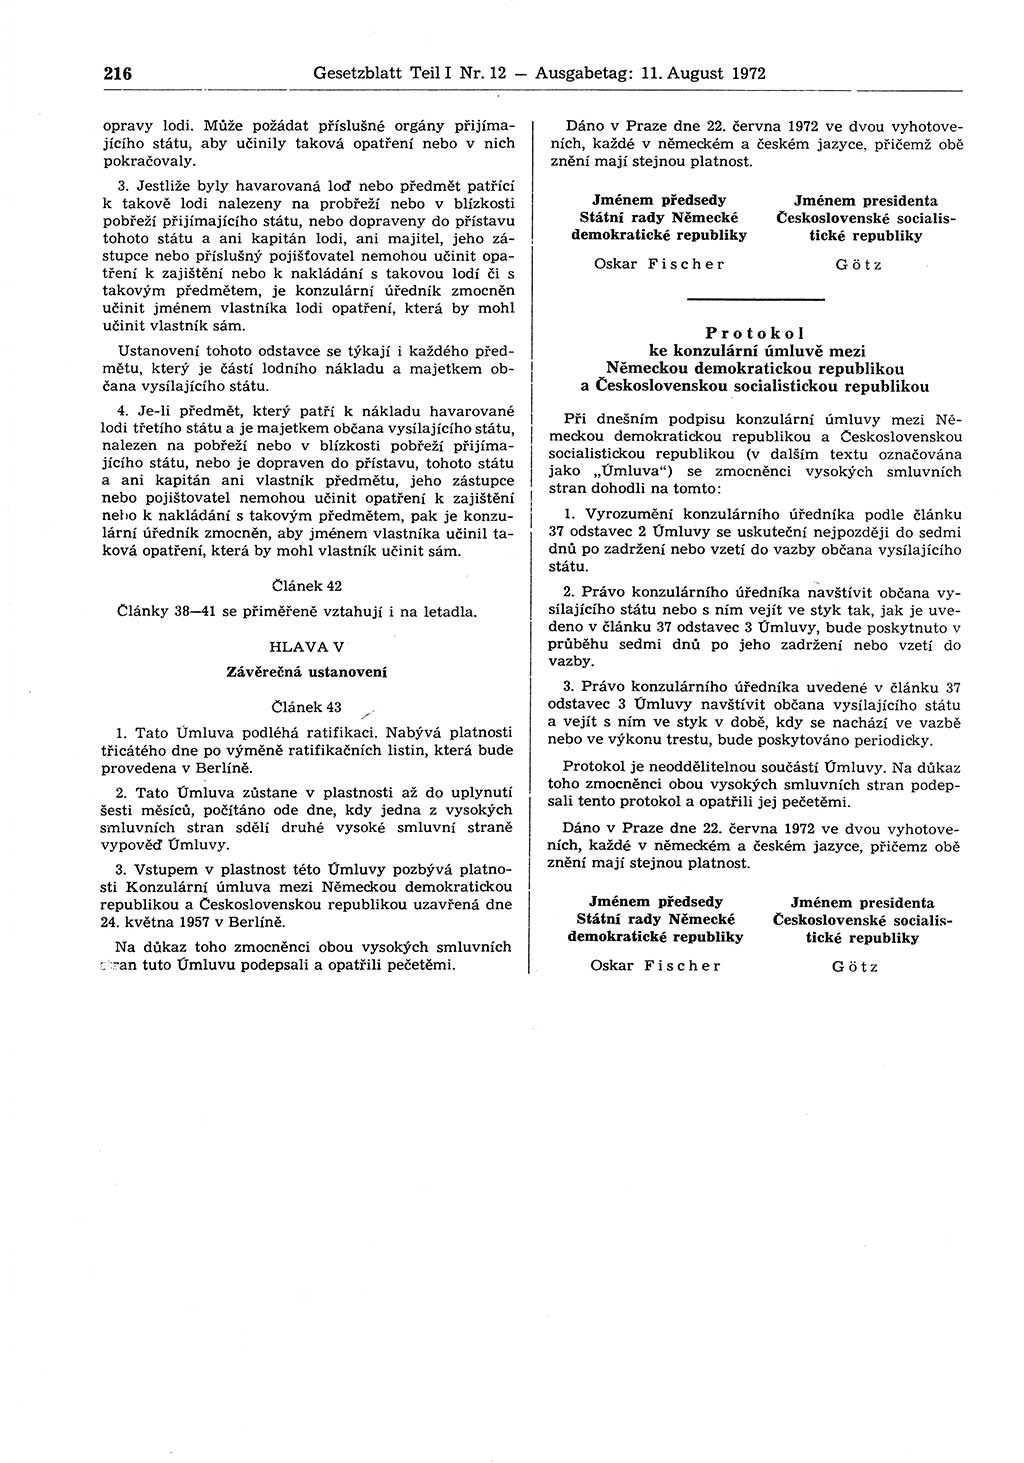 Gesetzblatt (GBl.) der Deutschen Demokratischen Republik (DDR) Teil Ⅰ 1972, Seite 216 (GBl. DDR Ⅰ 1972, S. 216)